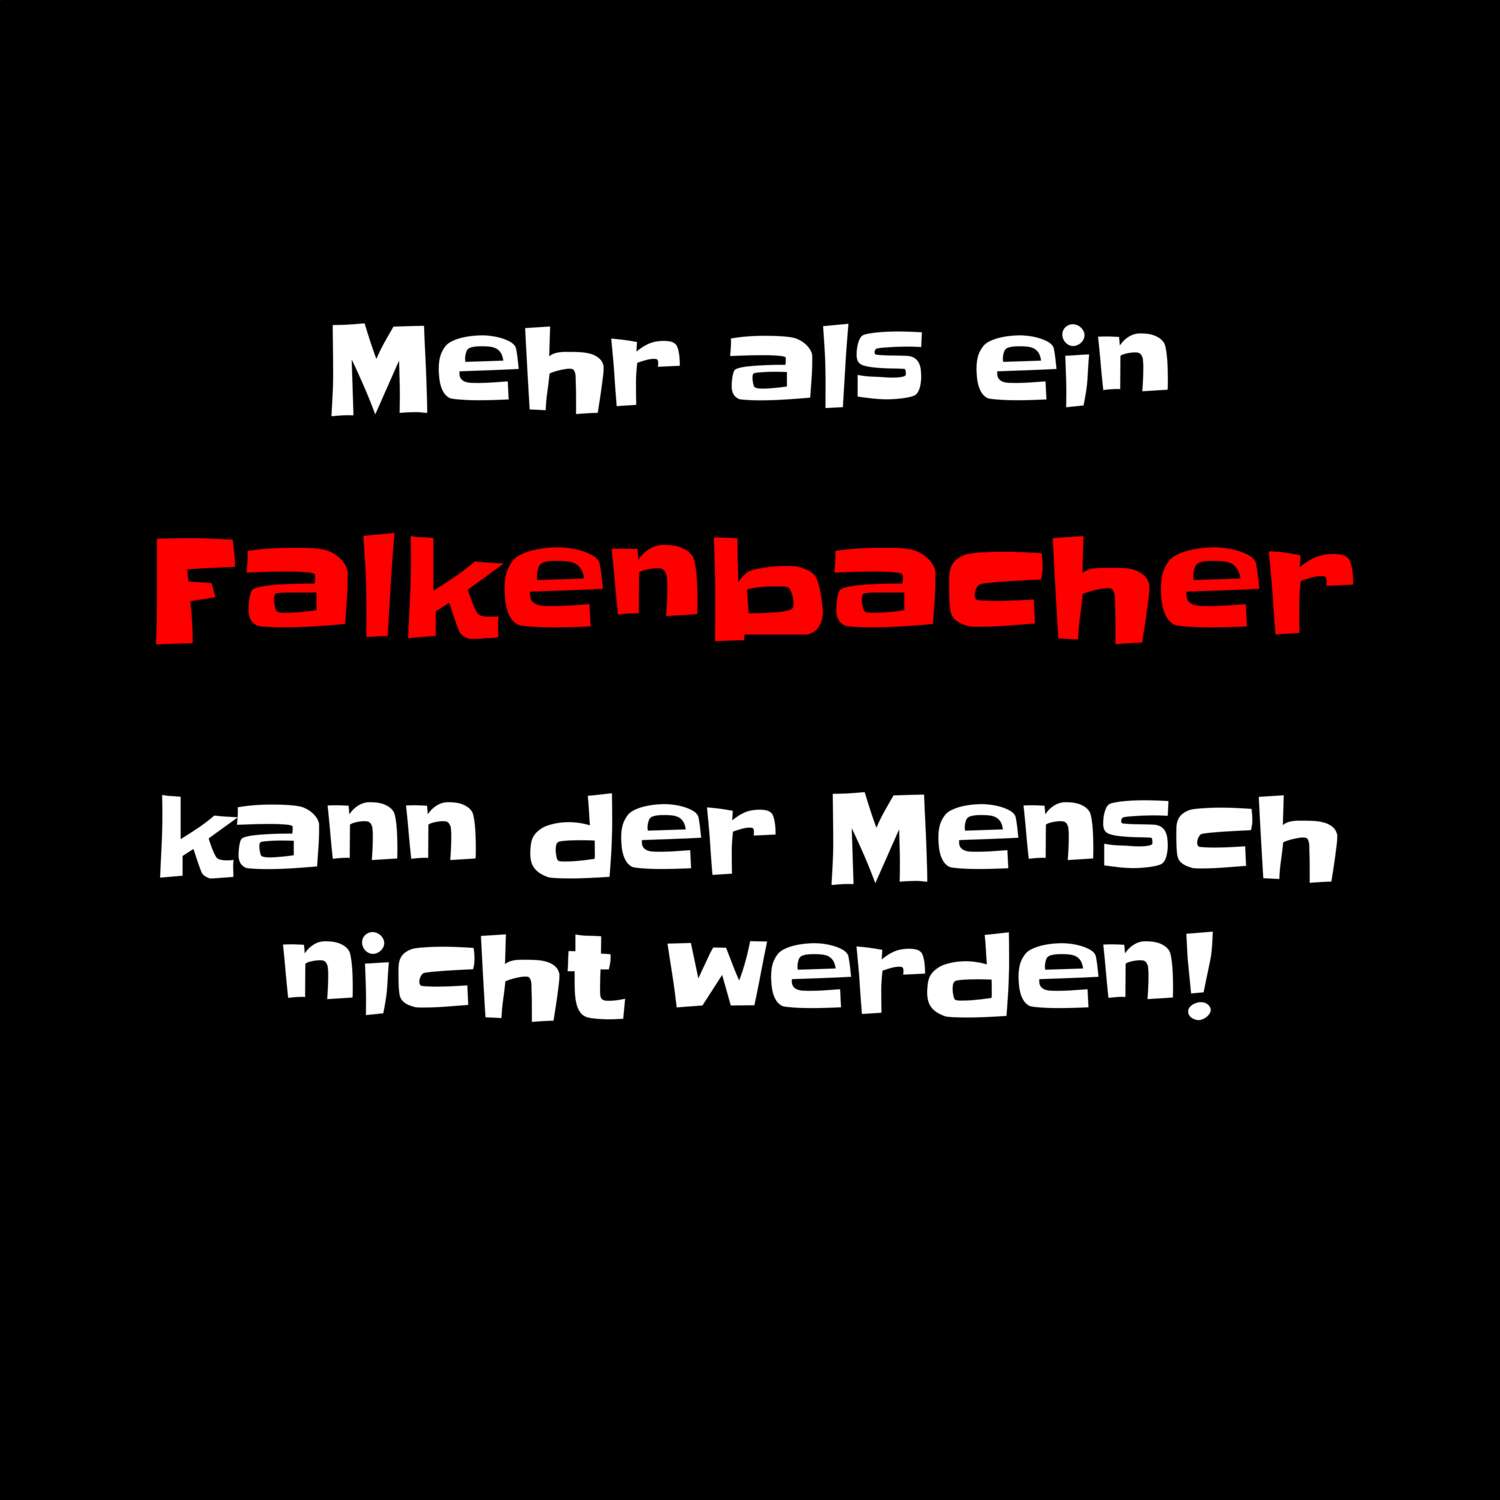 Falkenbach T-Shirt »Mehr als ein«